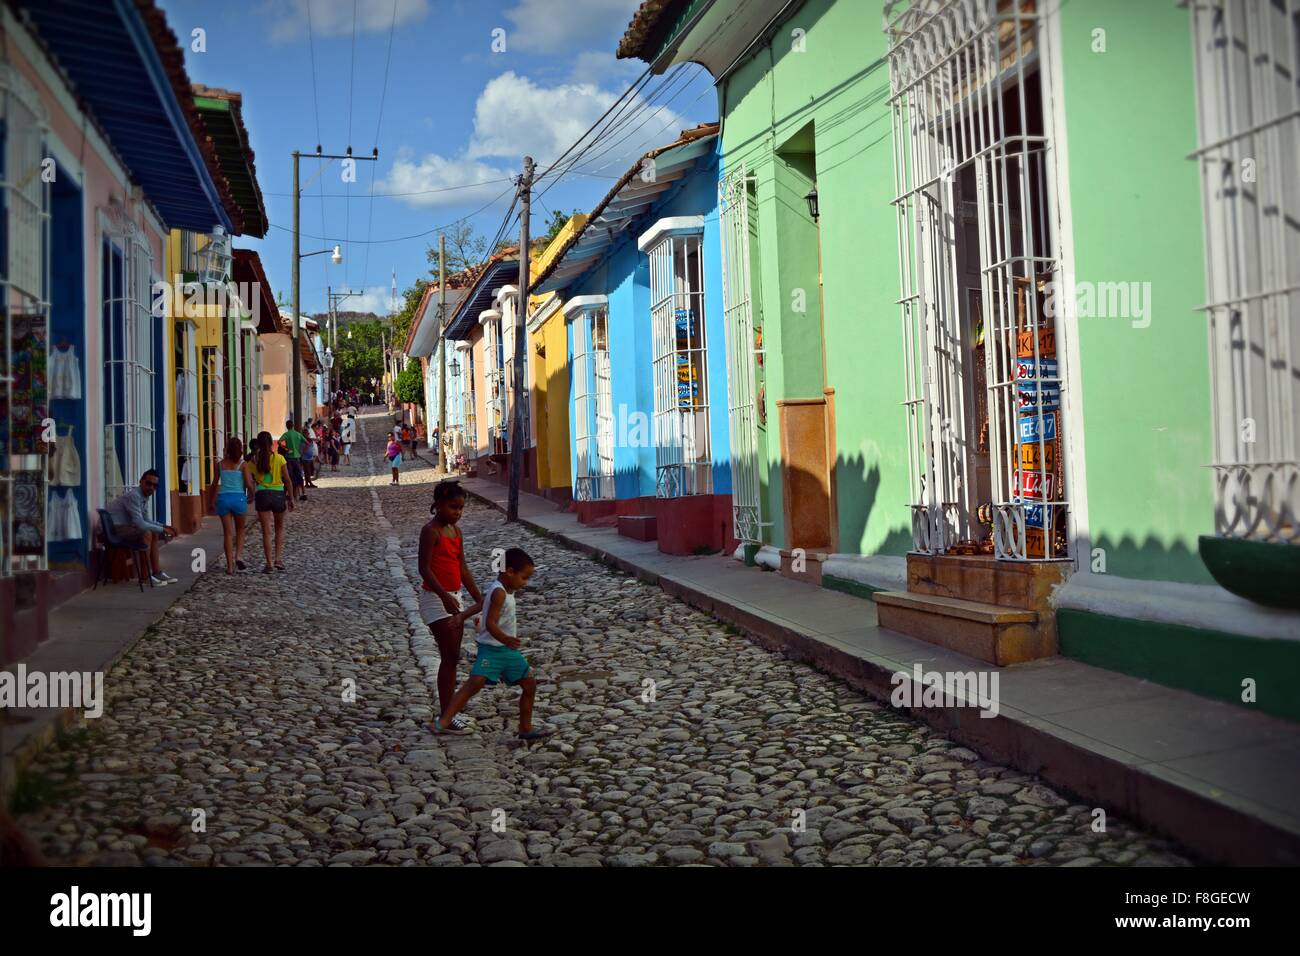 Kinder spielen auf einer gepflasterten Straße, gesäumt von bunten Häusern in Trinidad Provinz Sancti Spiritus-Kuba Stockfoto